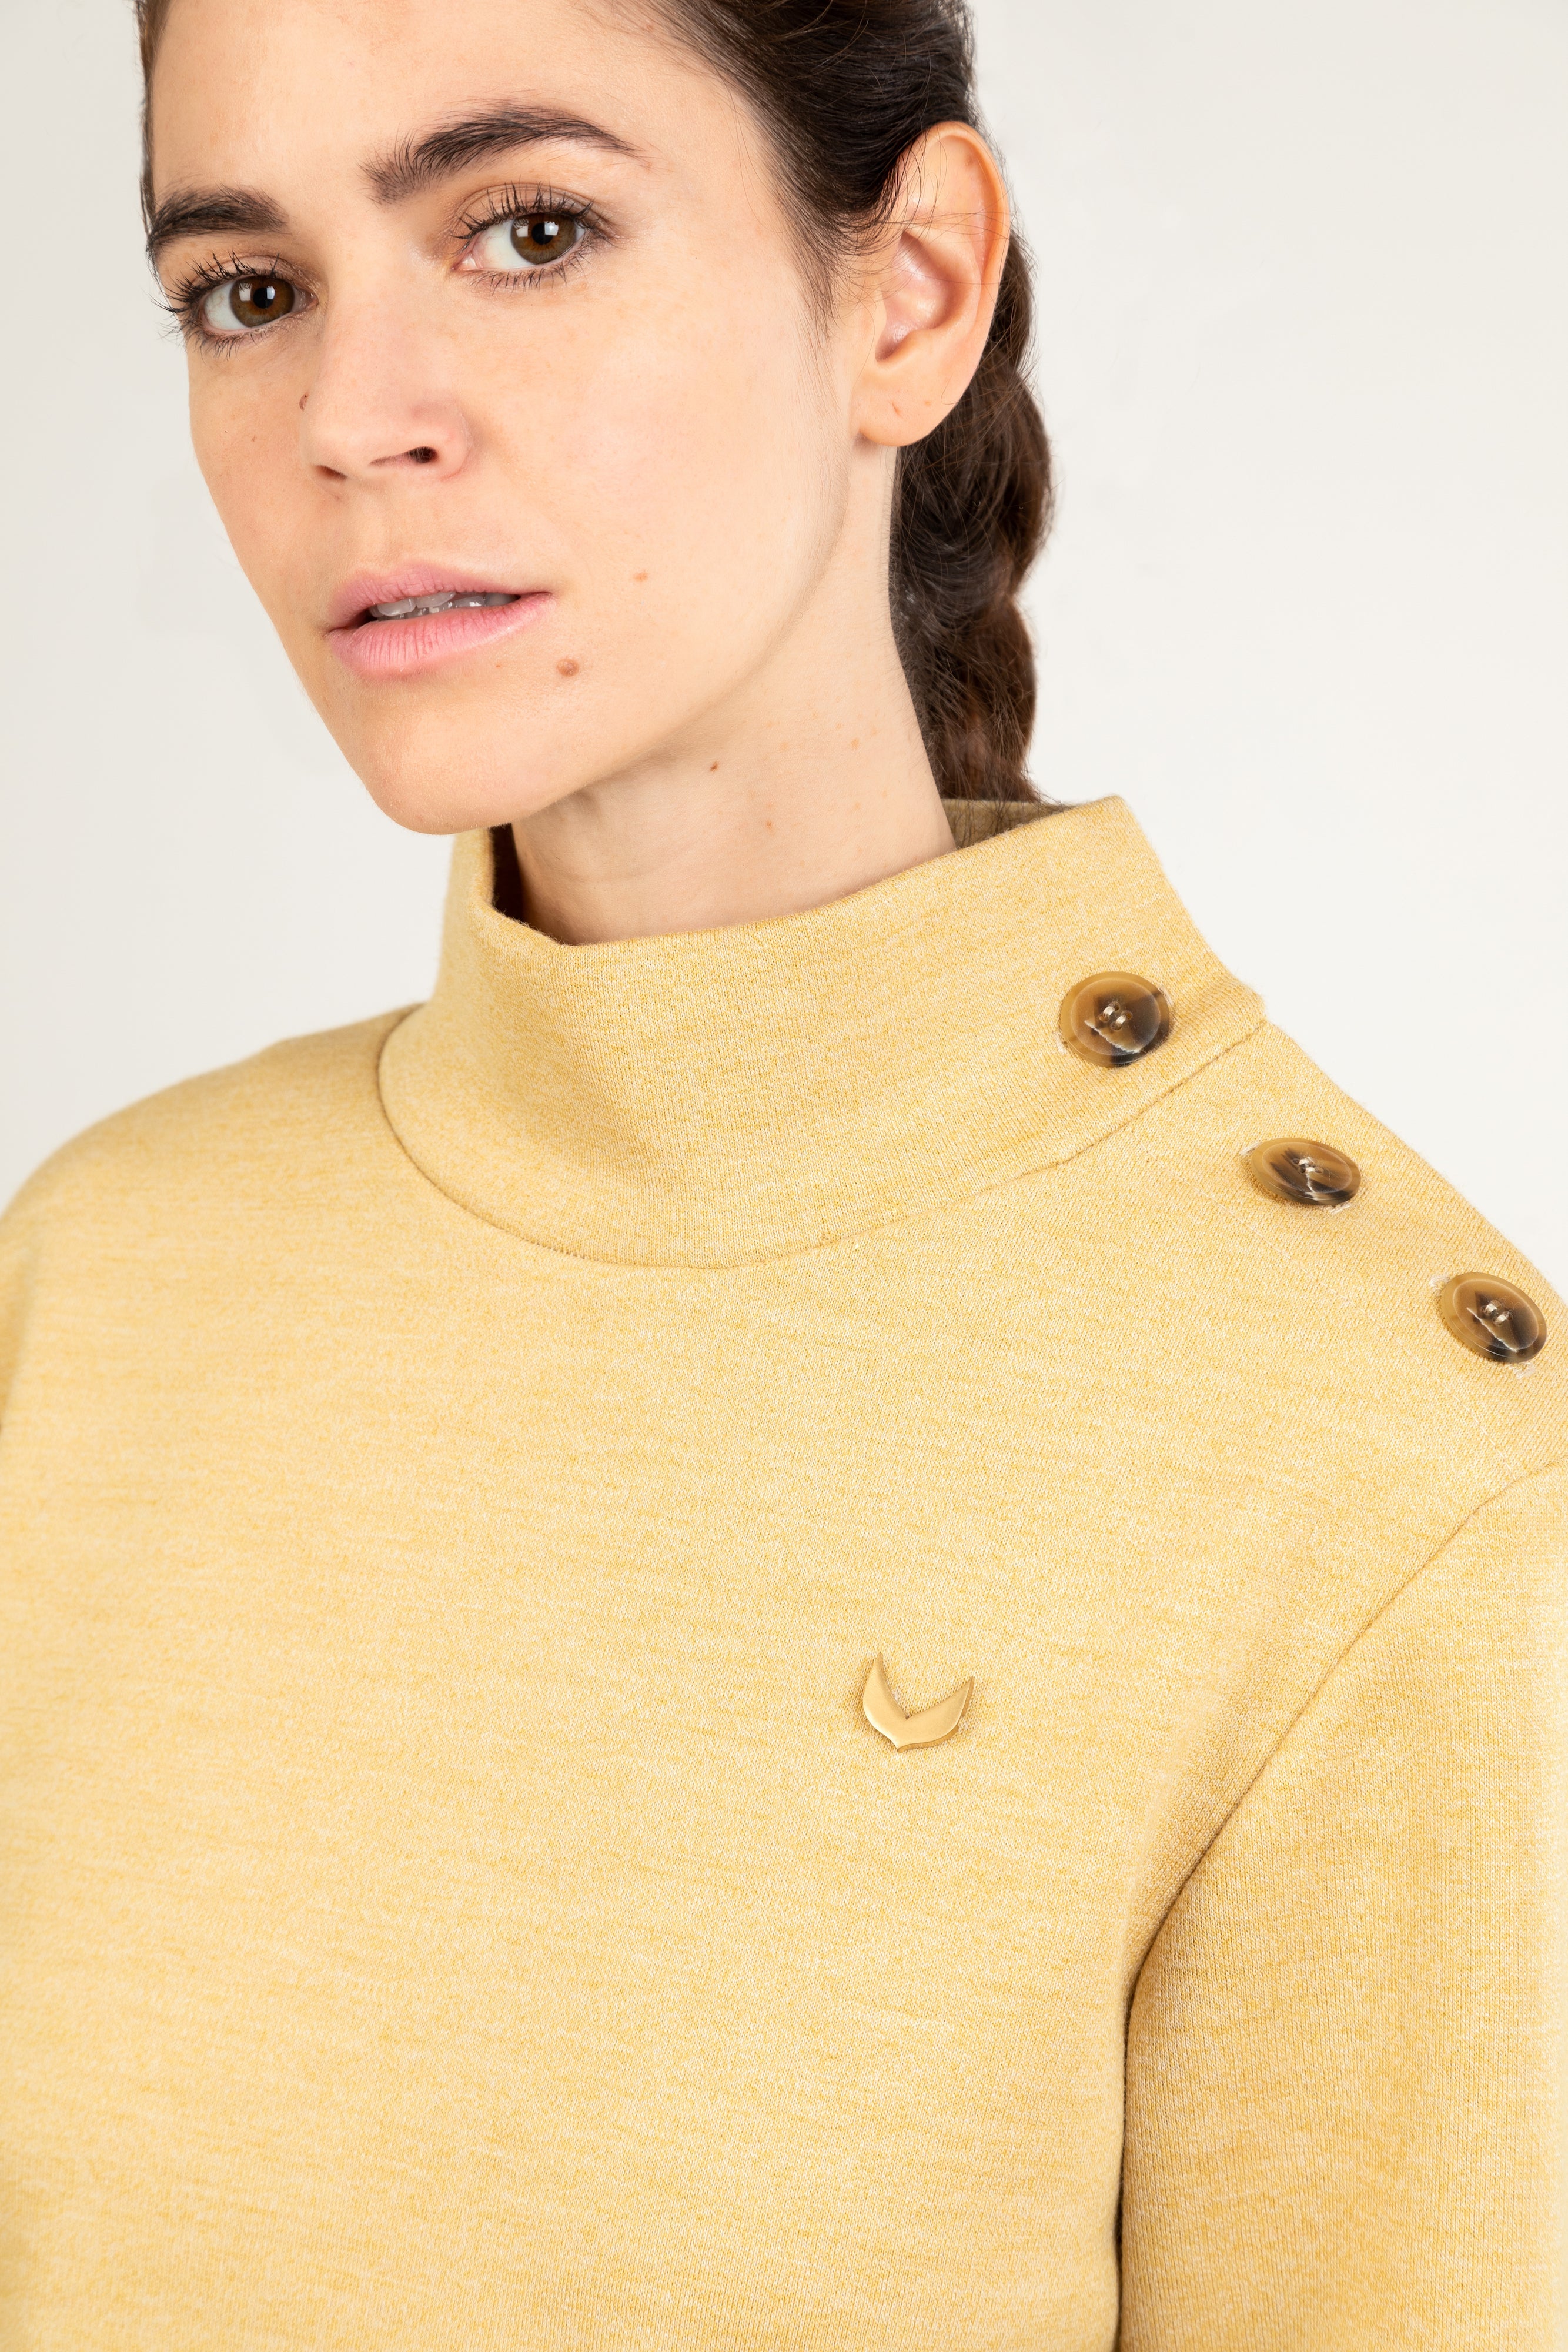 LUTAN RG - High Collar Sweater in Twisted Wool Jersey – MEUNE